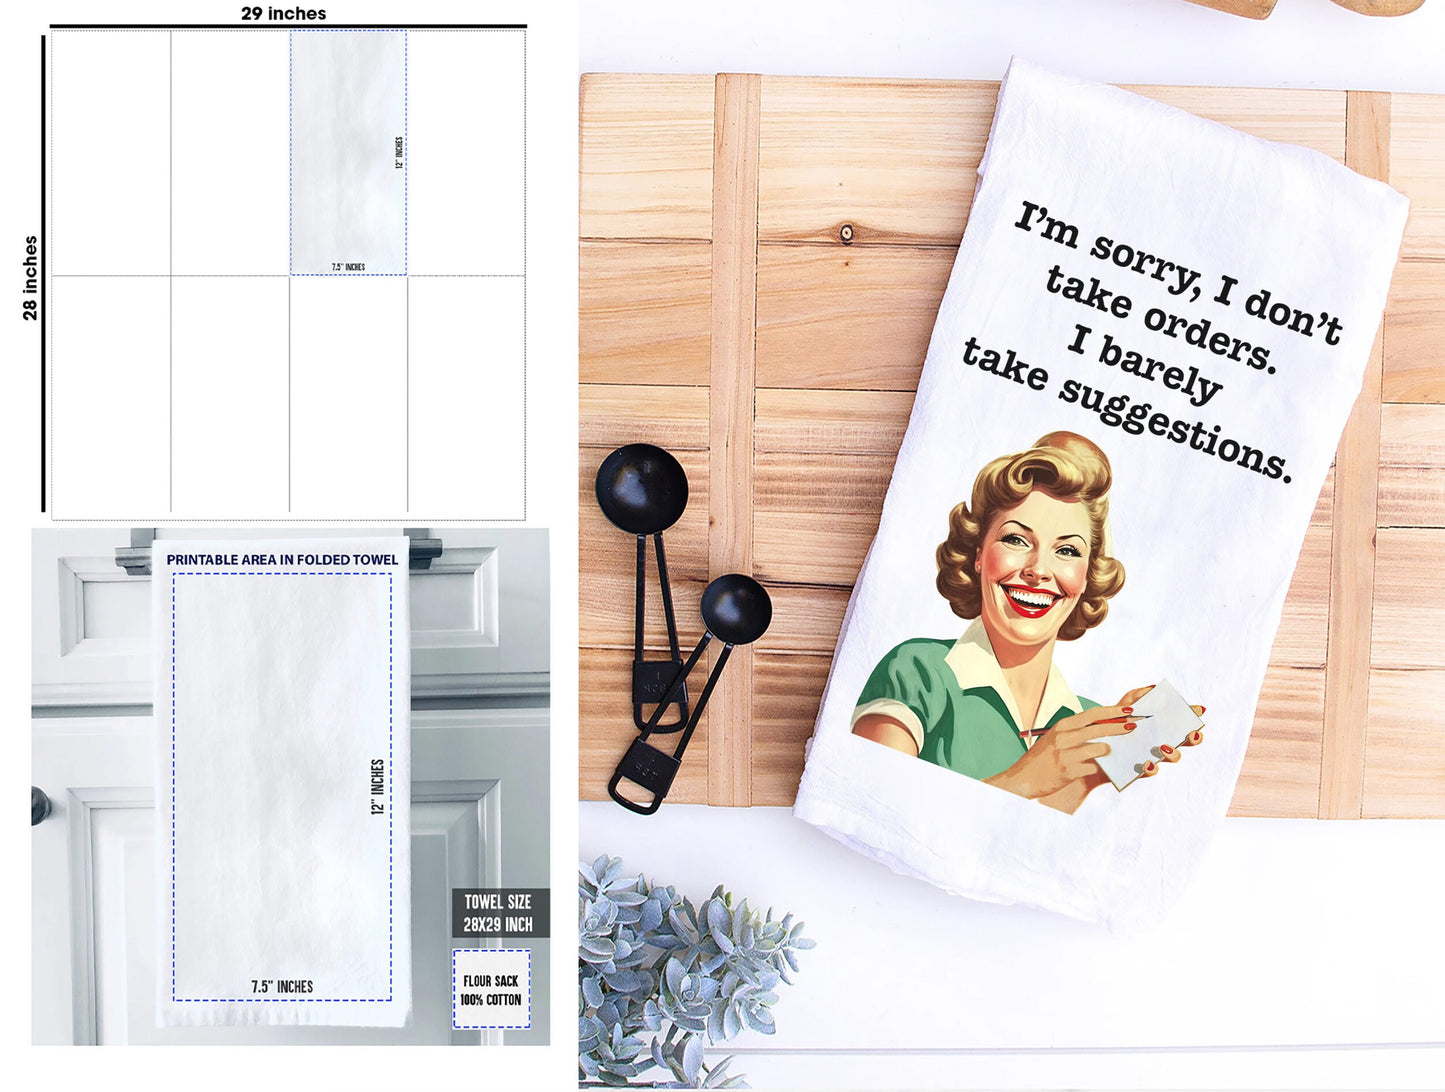 Retro Vintage Kitchen Towel, Funny Kitchen Towel, Poster Vintage Kitchen Towel with Funny Quote, Funny Flour Sack dish towel, Kitchen Decor